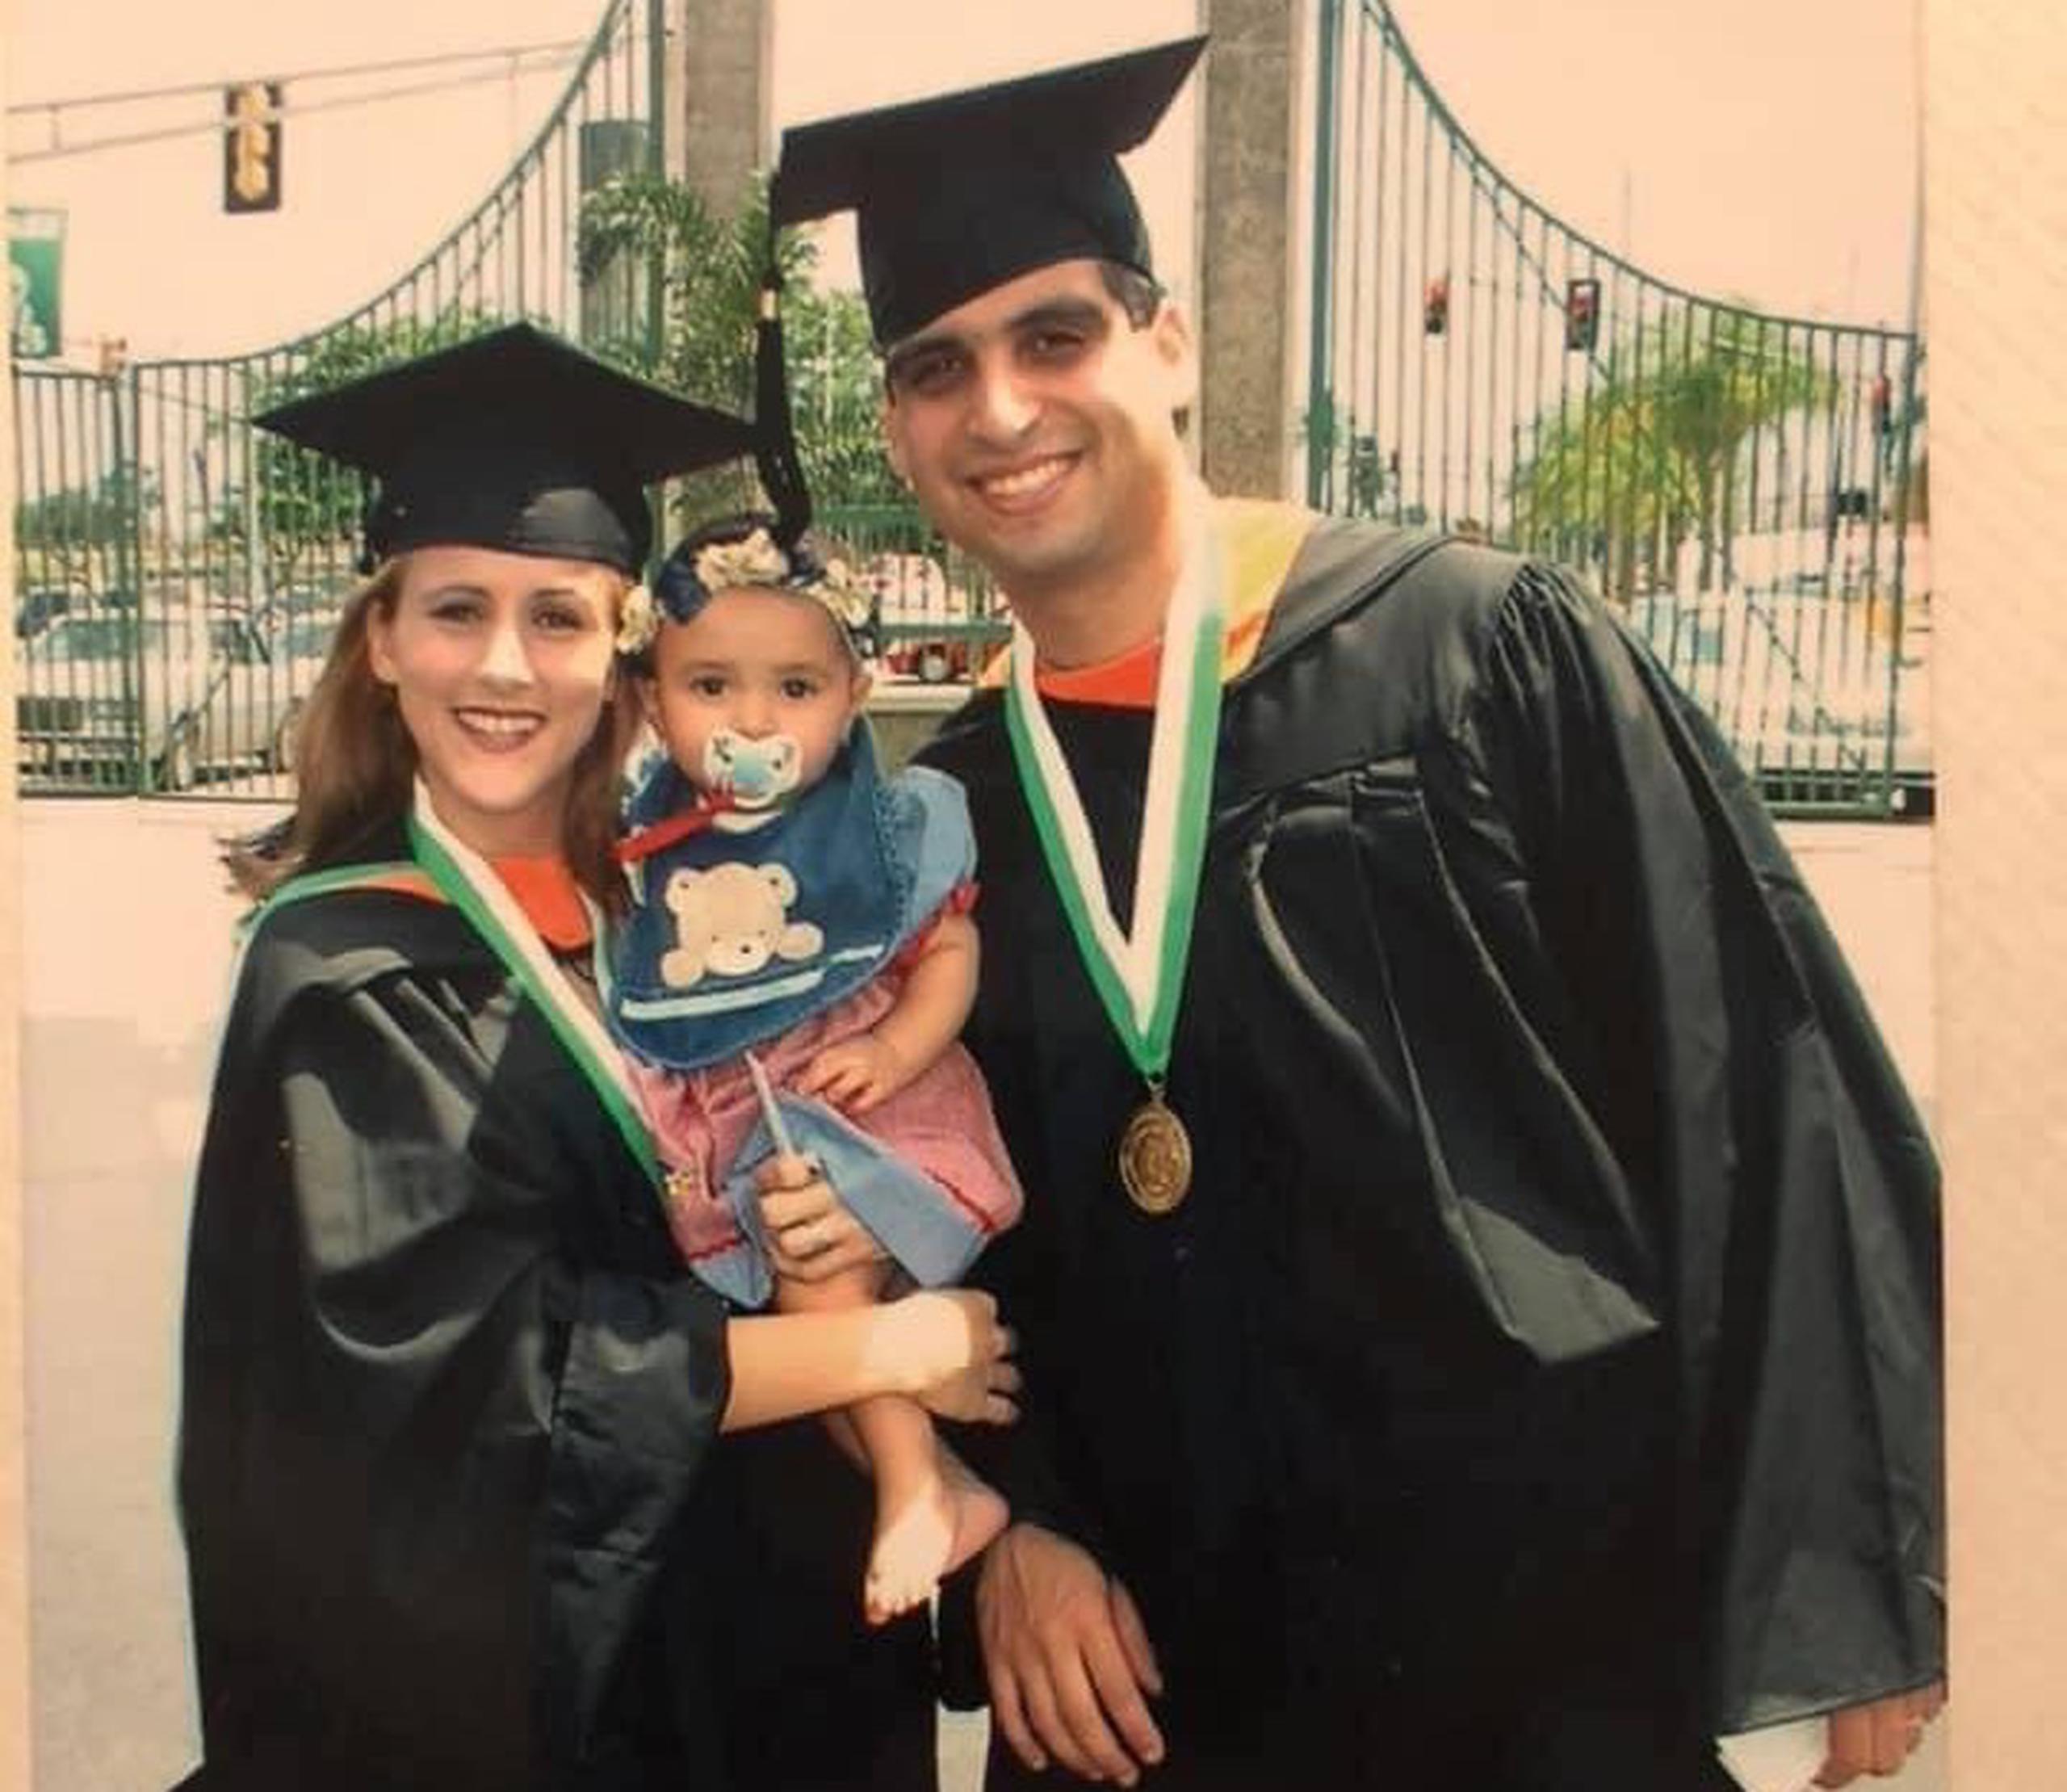 Alaina M. Camasta Beníquez tenía 7 meses cuando desfiló con sus padres, María Beníquez y Amin Camasta en su graduación de bachillerato del Colegio de Mayagüez.